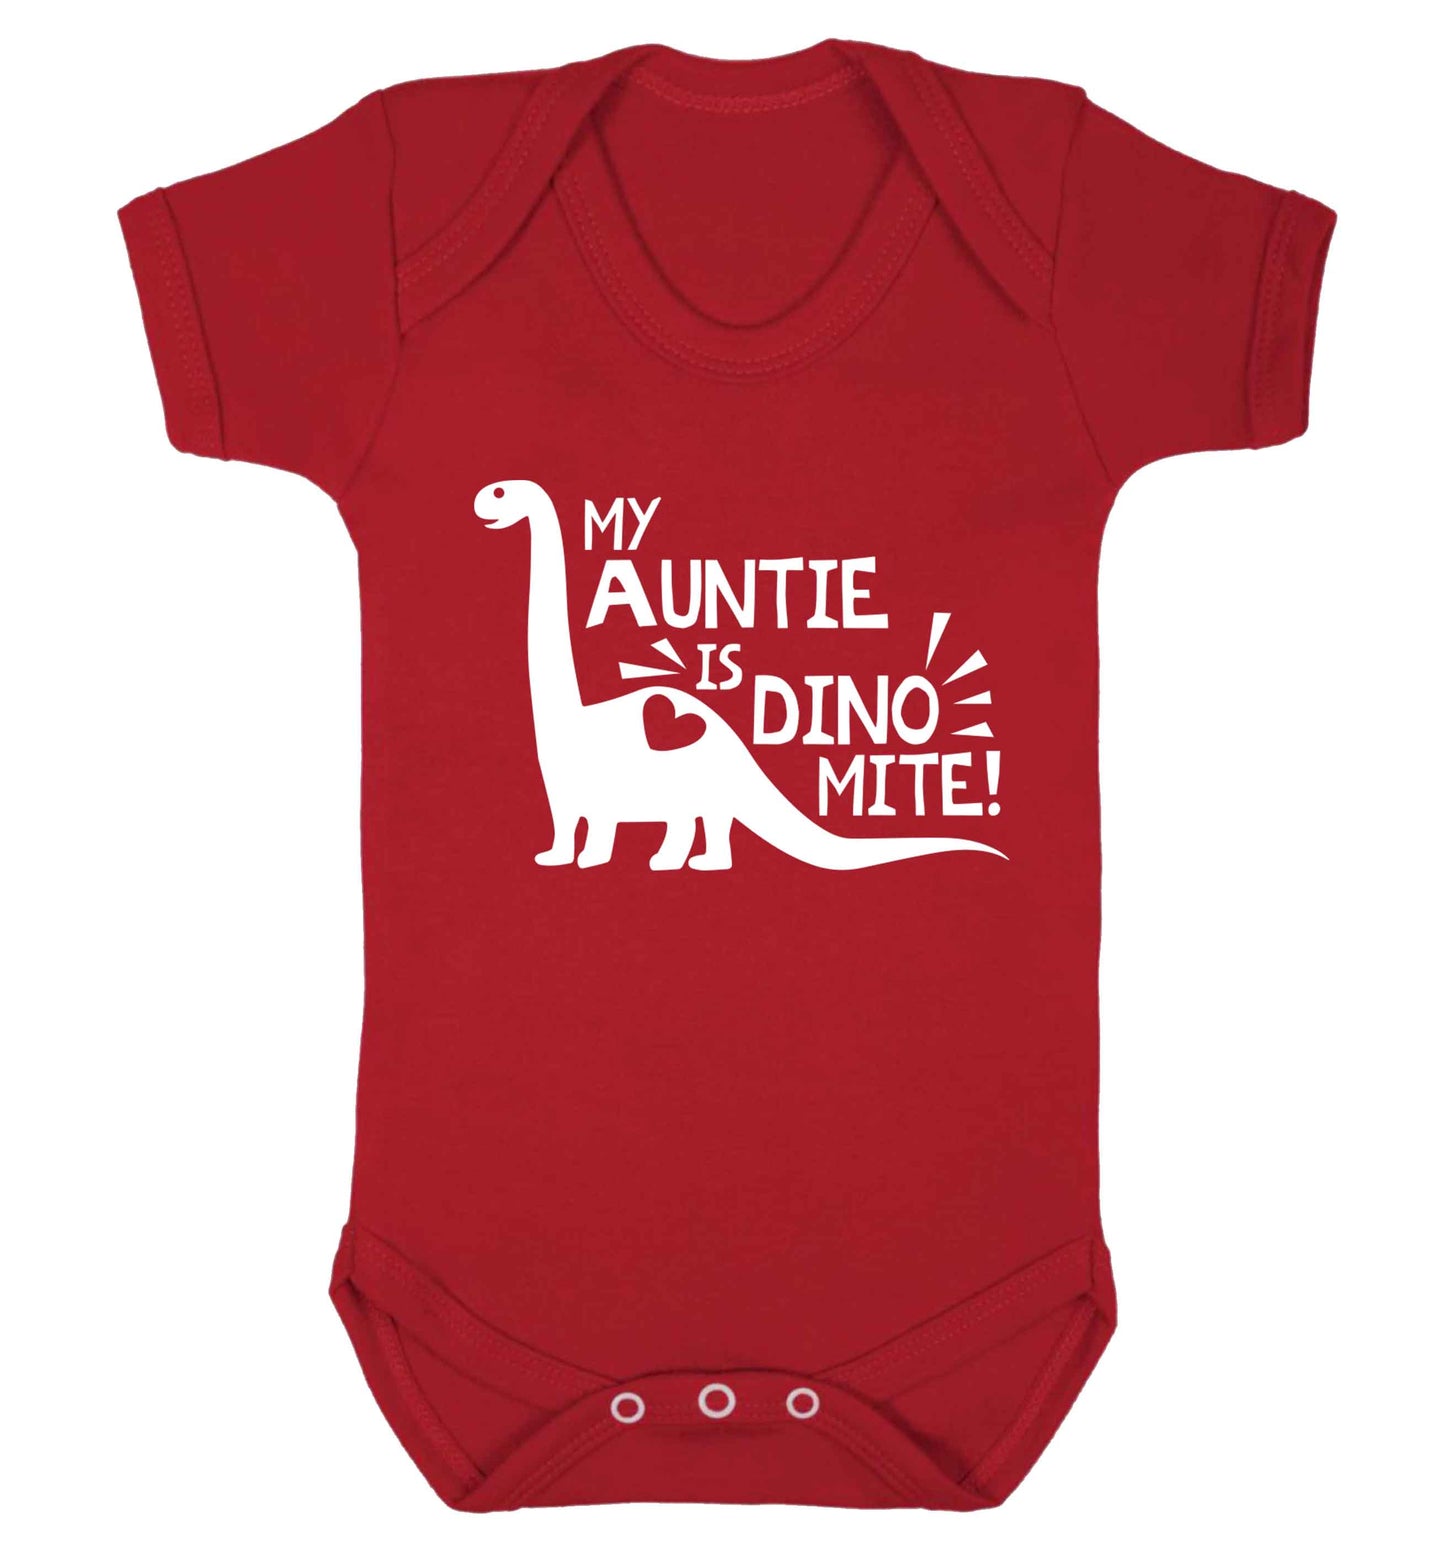 My auntie is dinomite! Baby Vest red 18-24 months